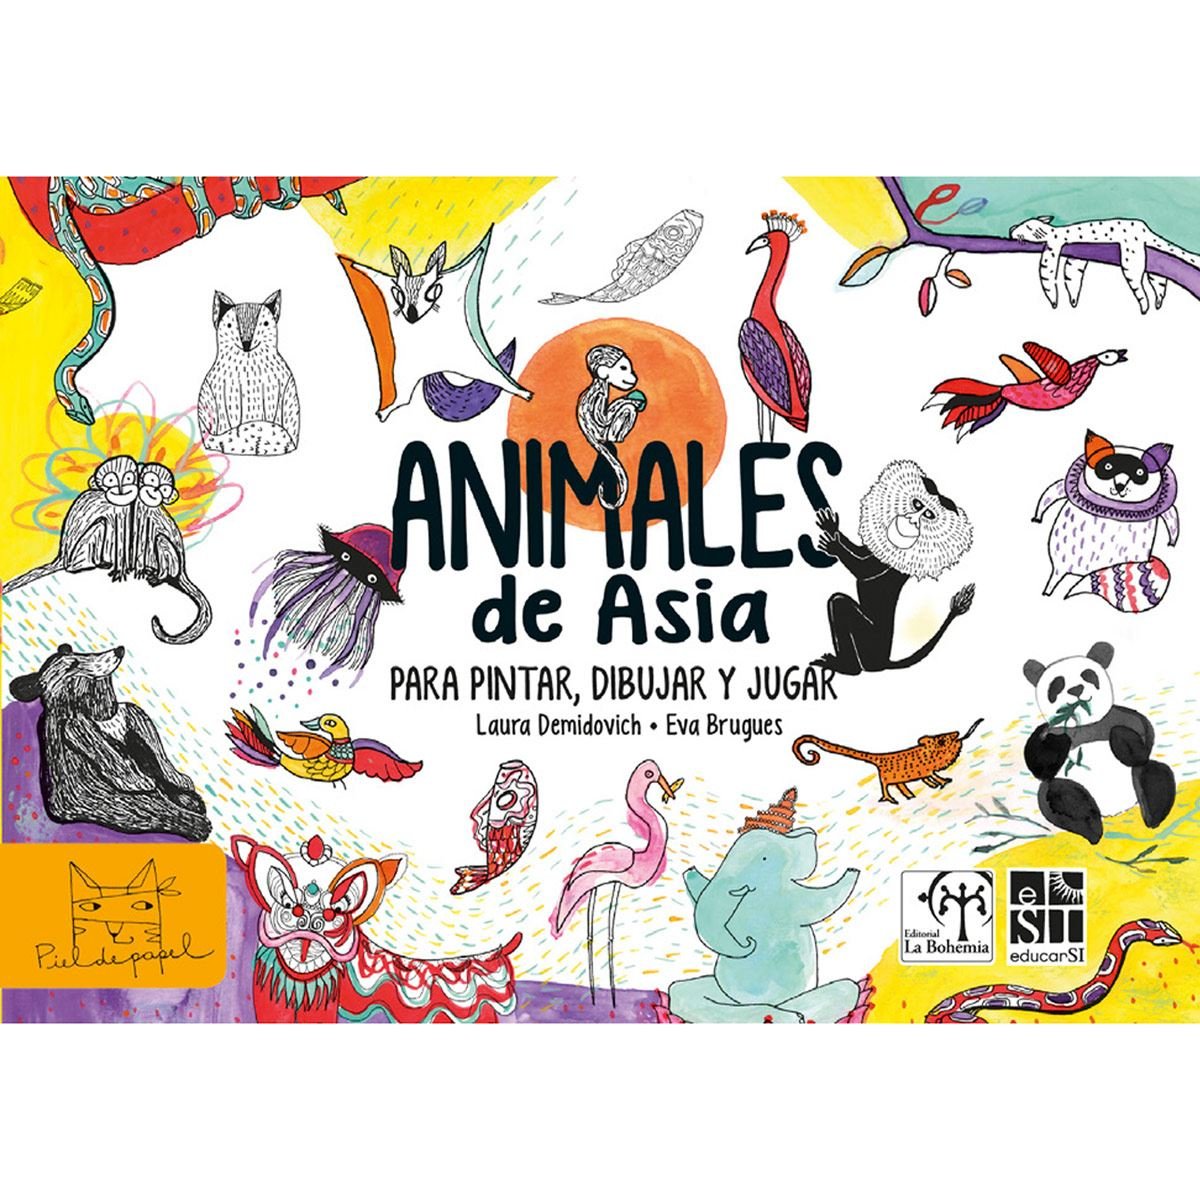 Animales de Asia: para pintar, dibujar y jugar.